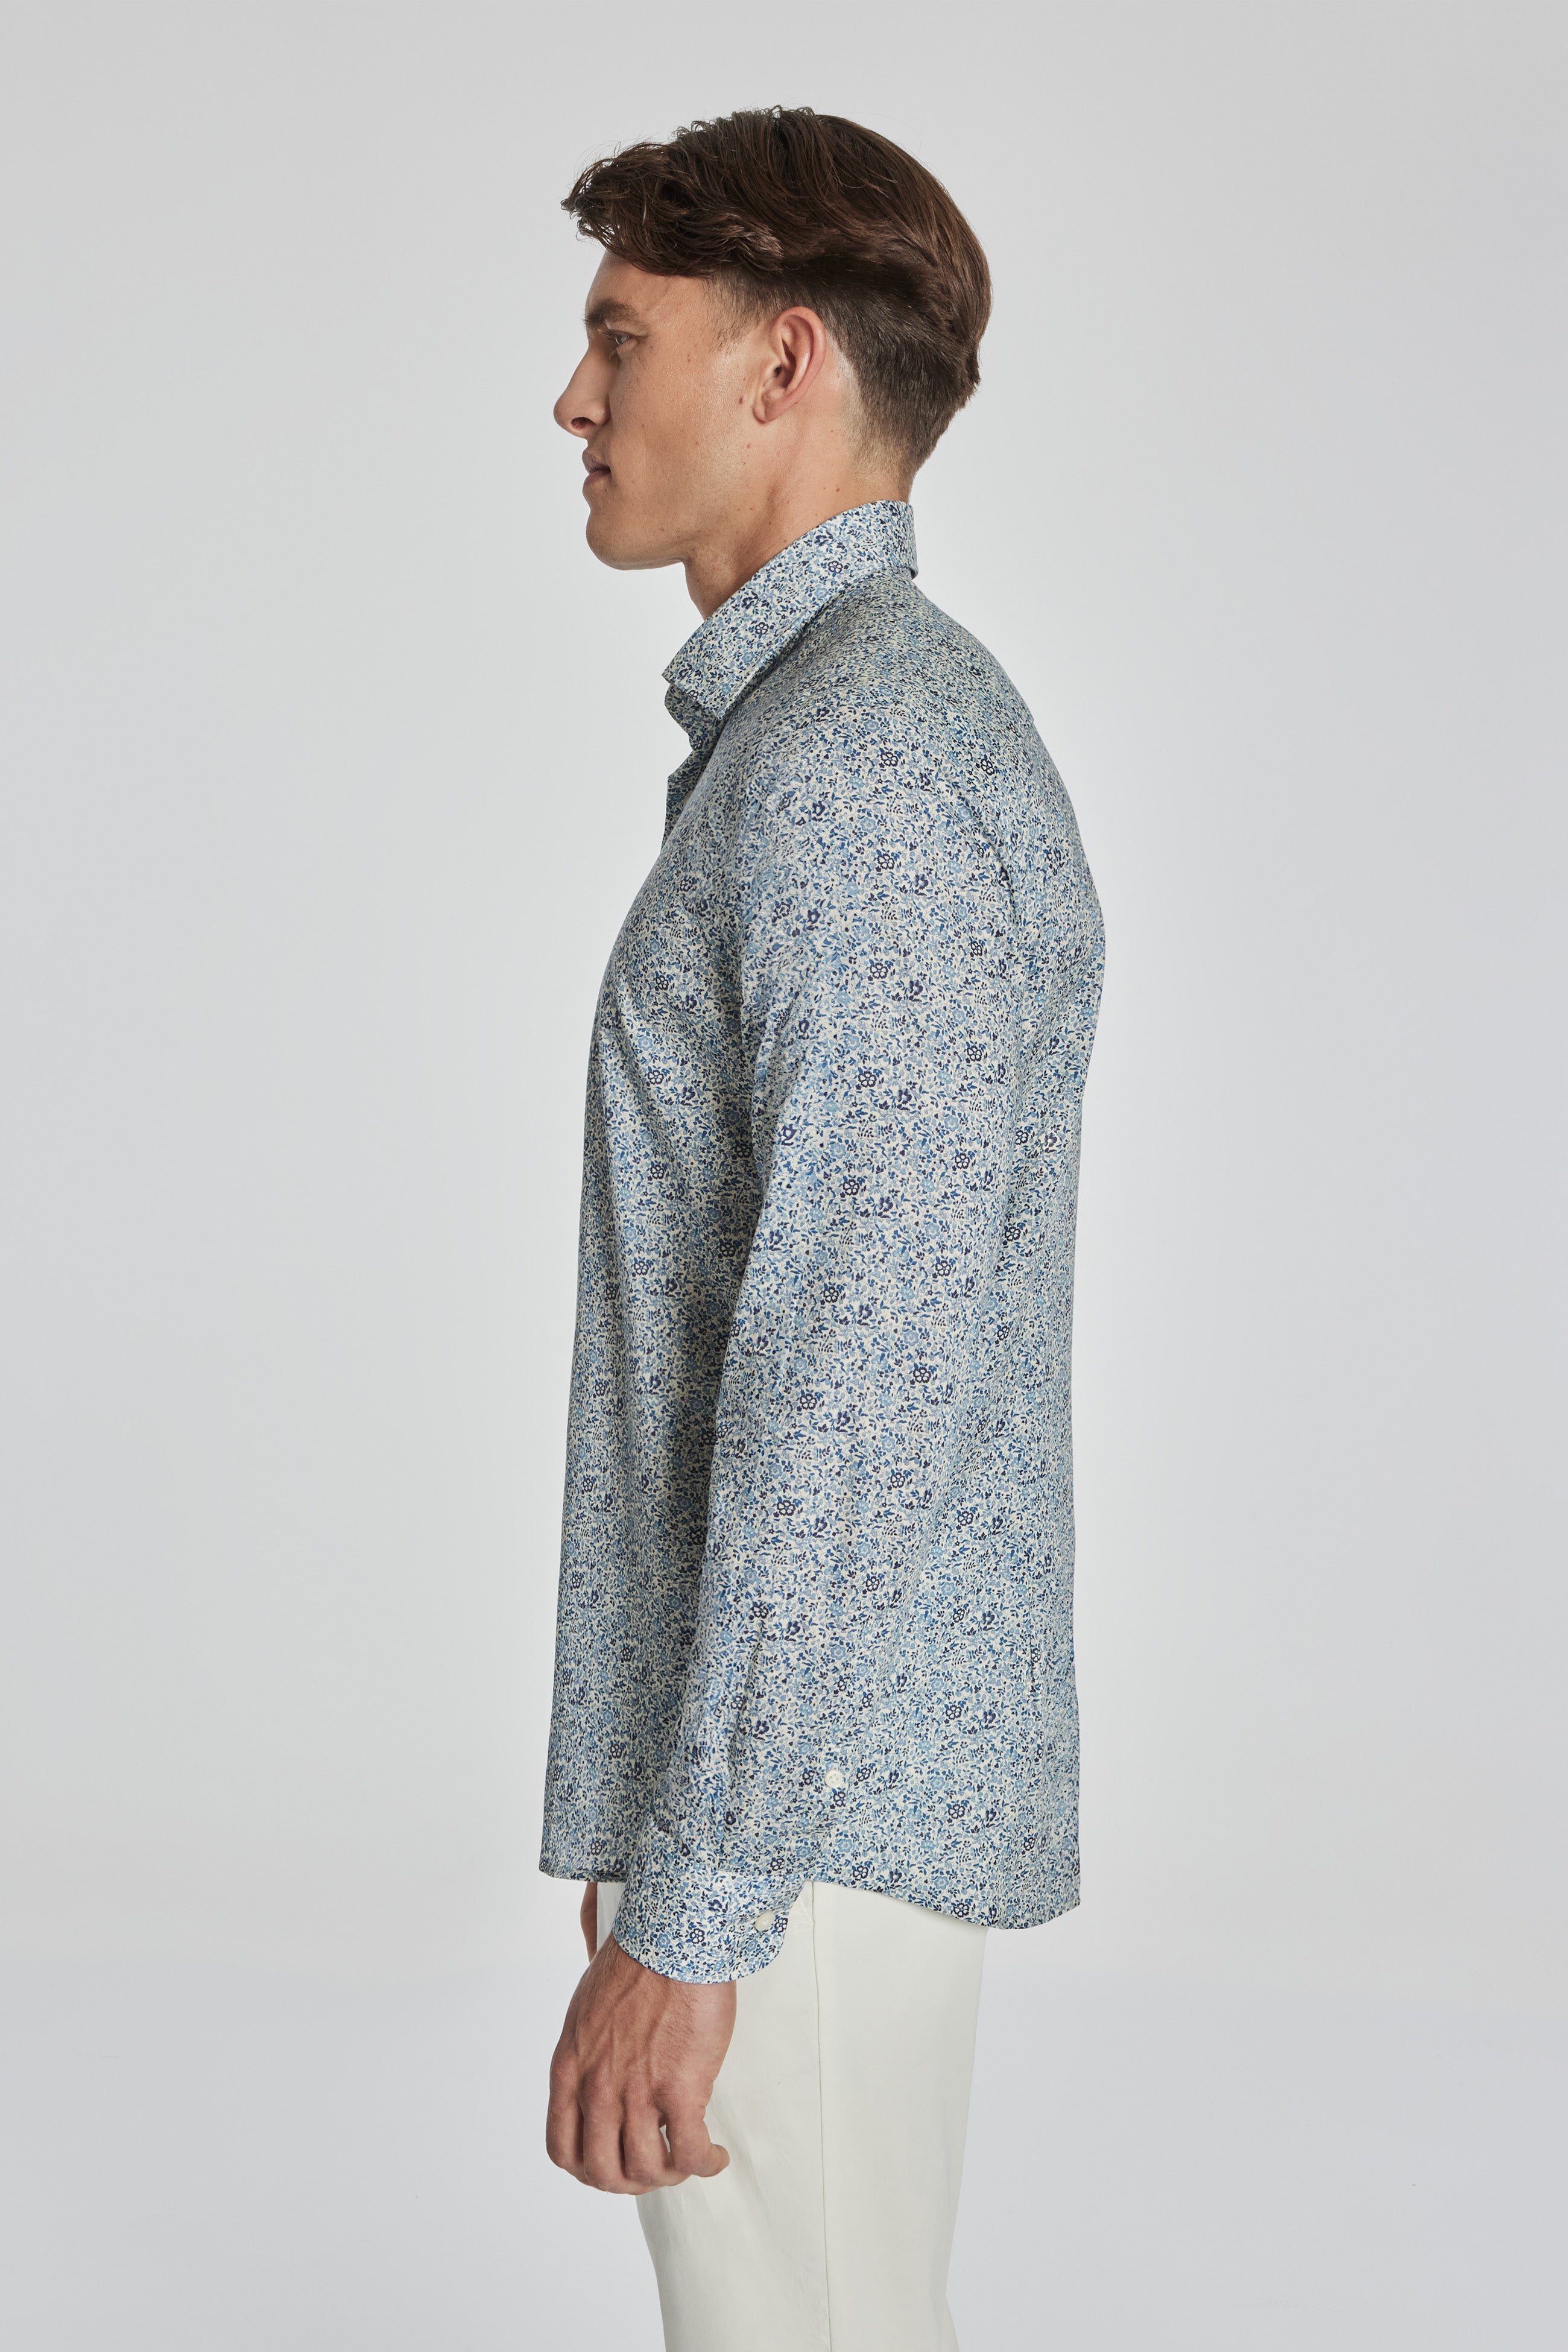 Vue alternative 3 Grayland chemise en coton à imprimé floral en bleu marine